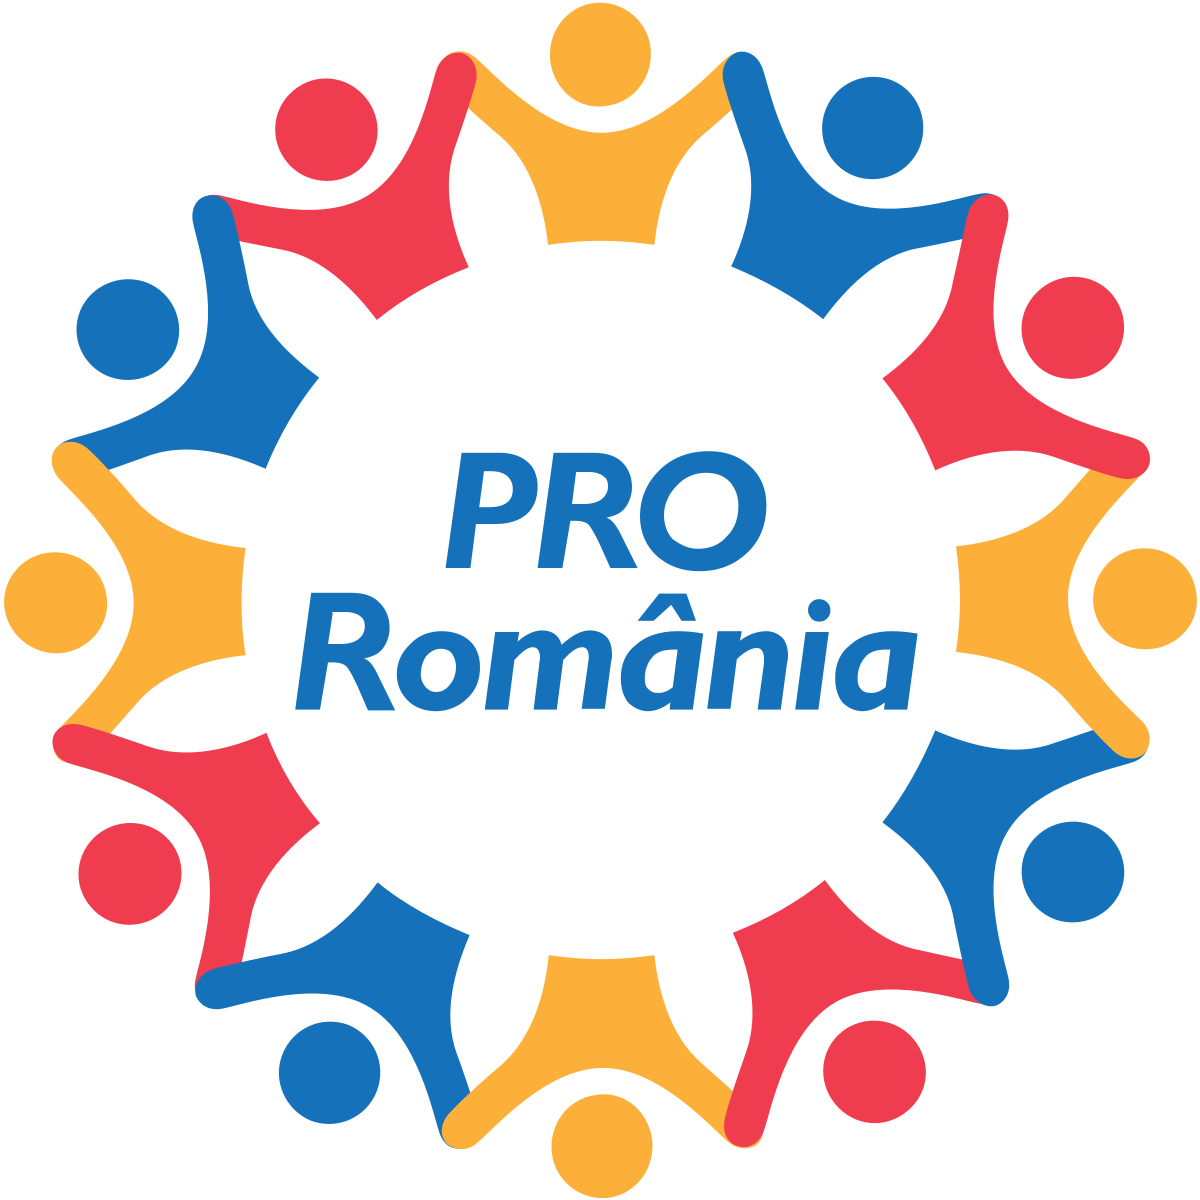 Pro Romania Wikipedia